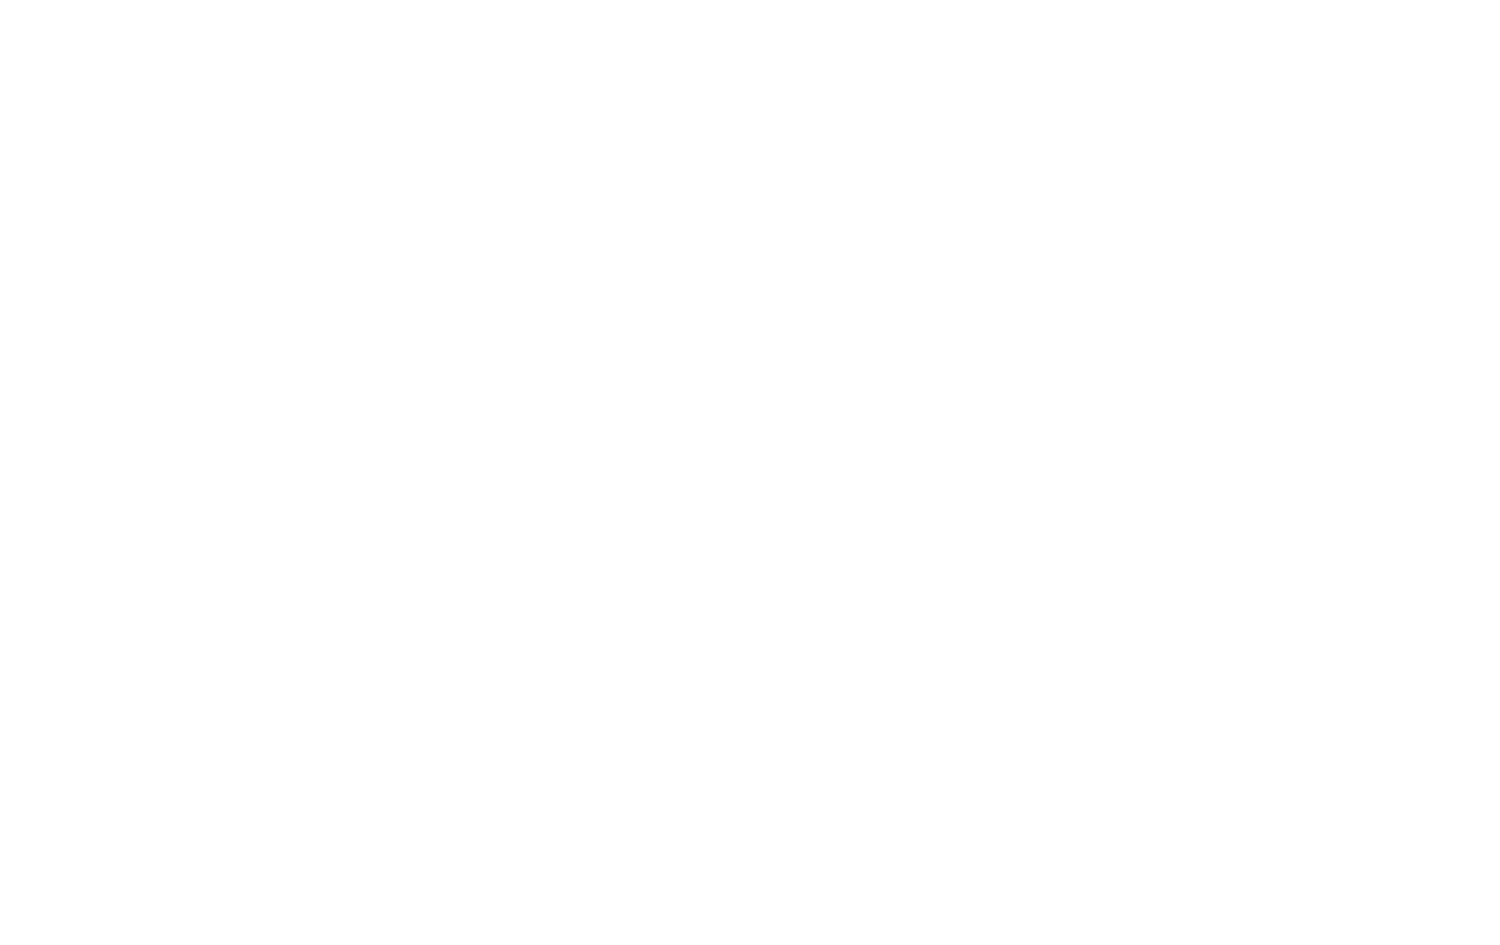 Renew Communities